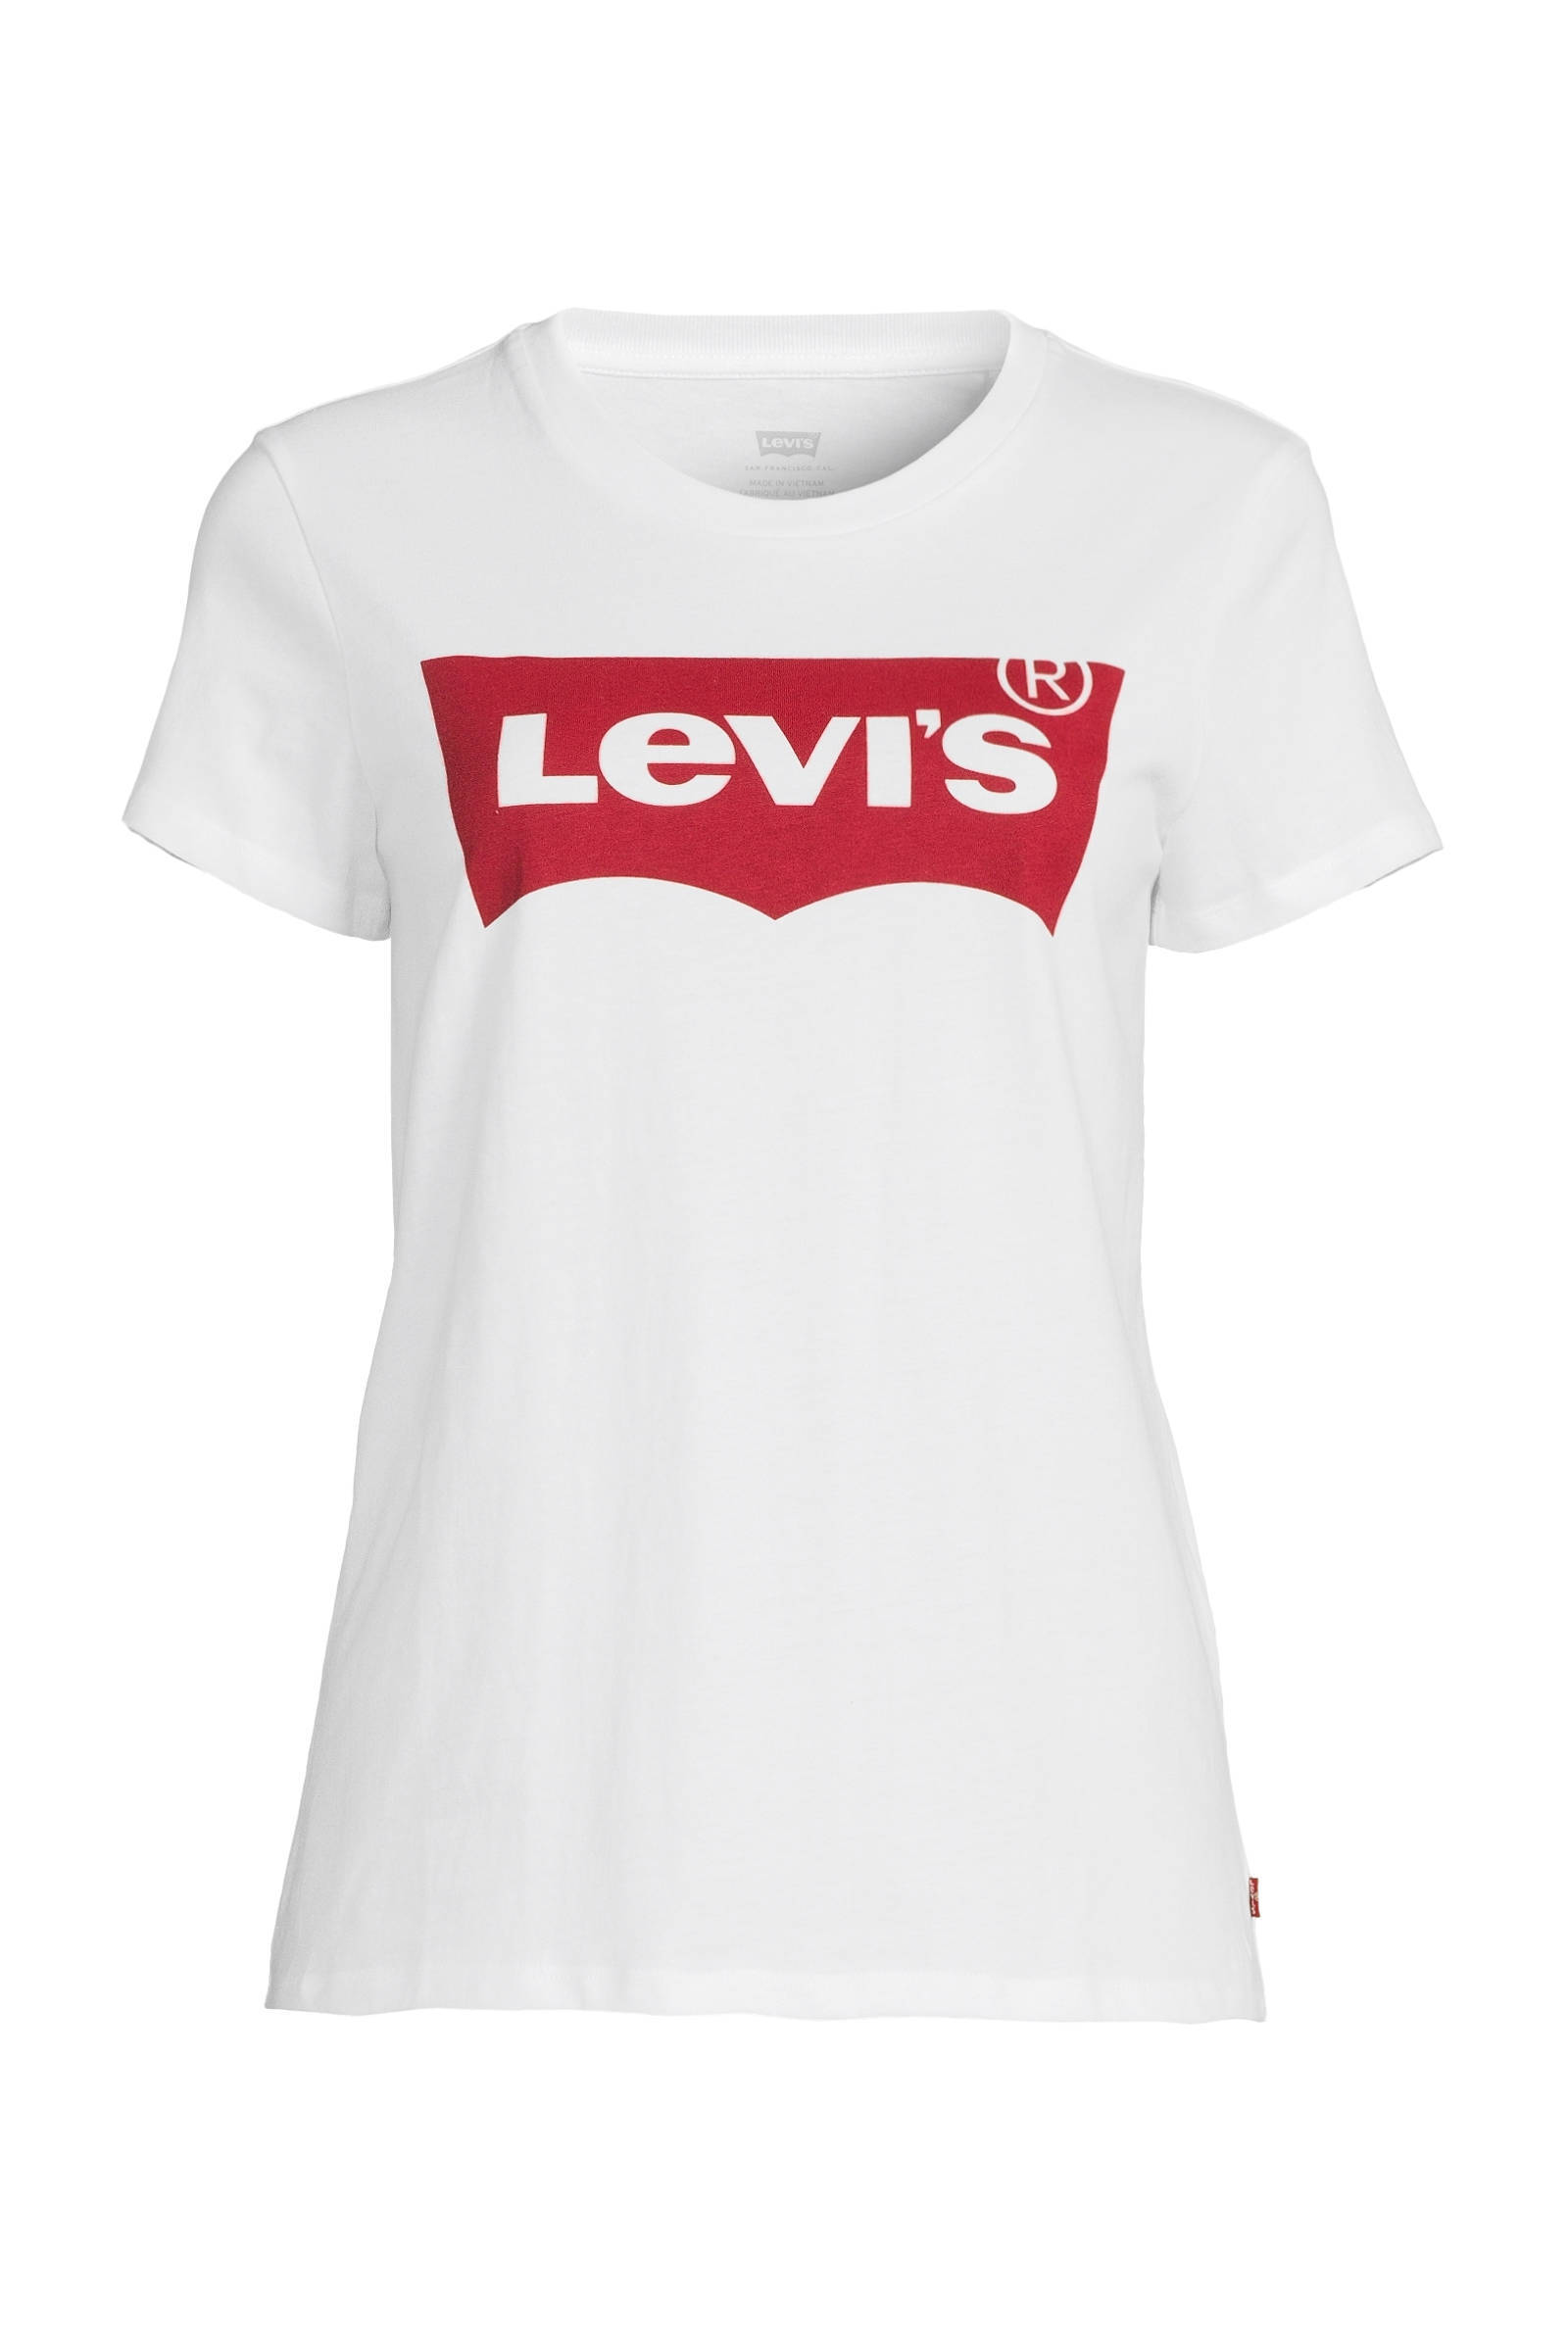 levis t shirt female